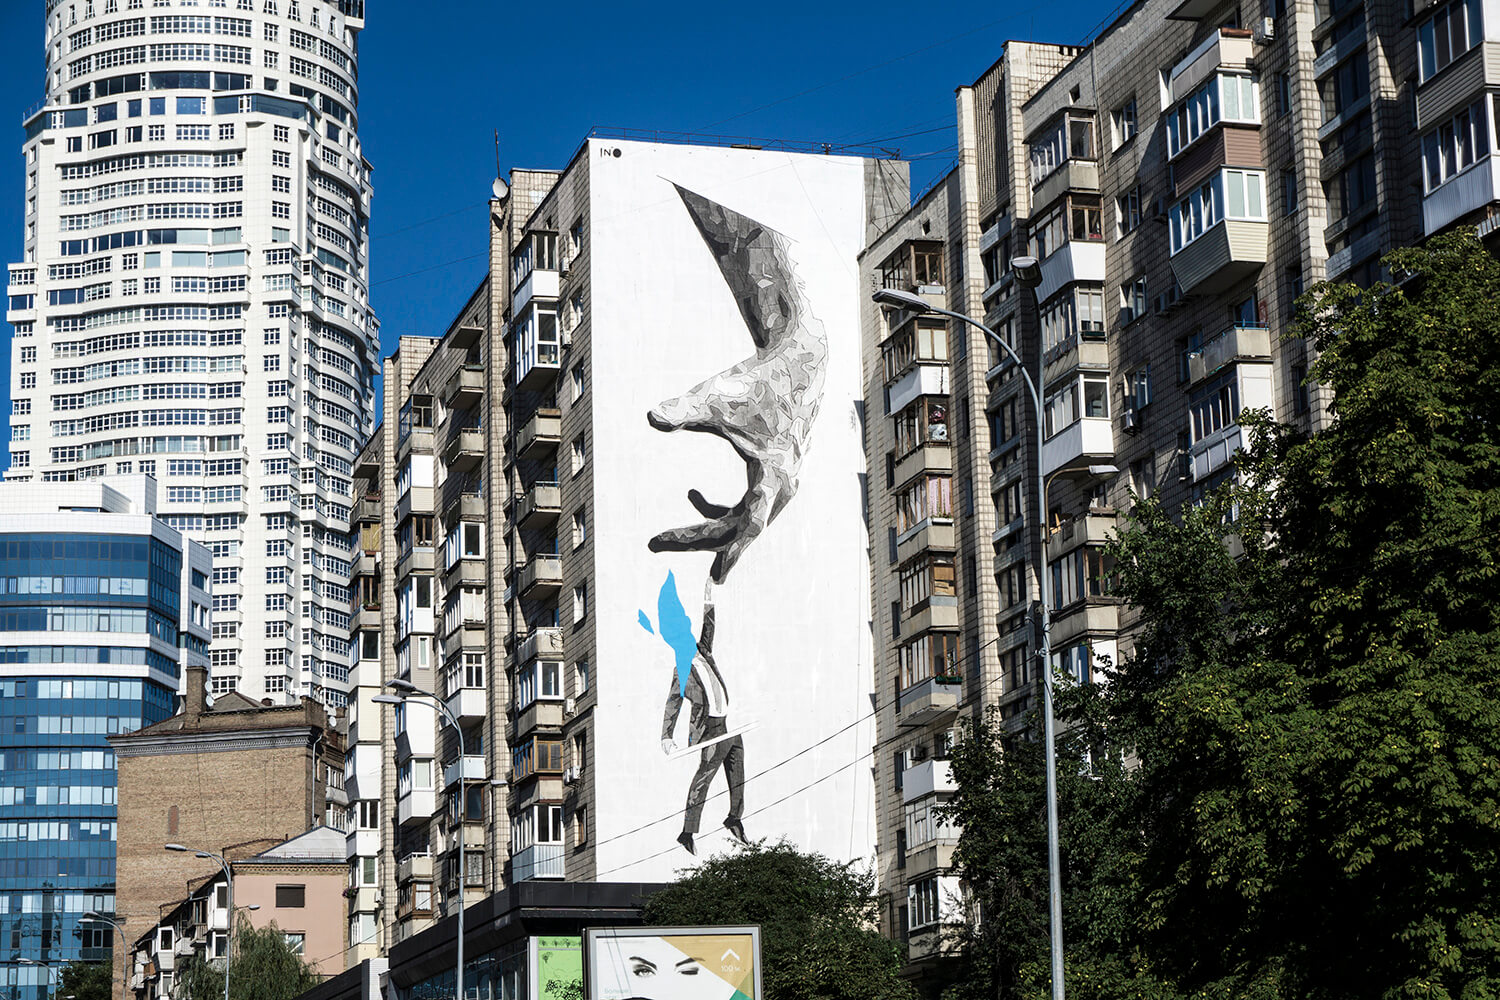 Street Artist INO paints ‘The Entrepreneur’, Kiev, Ukraine 2016